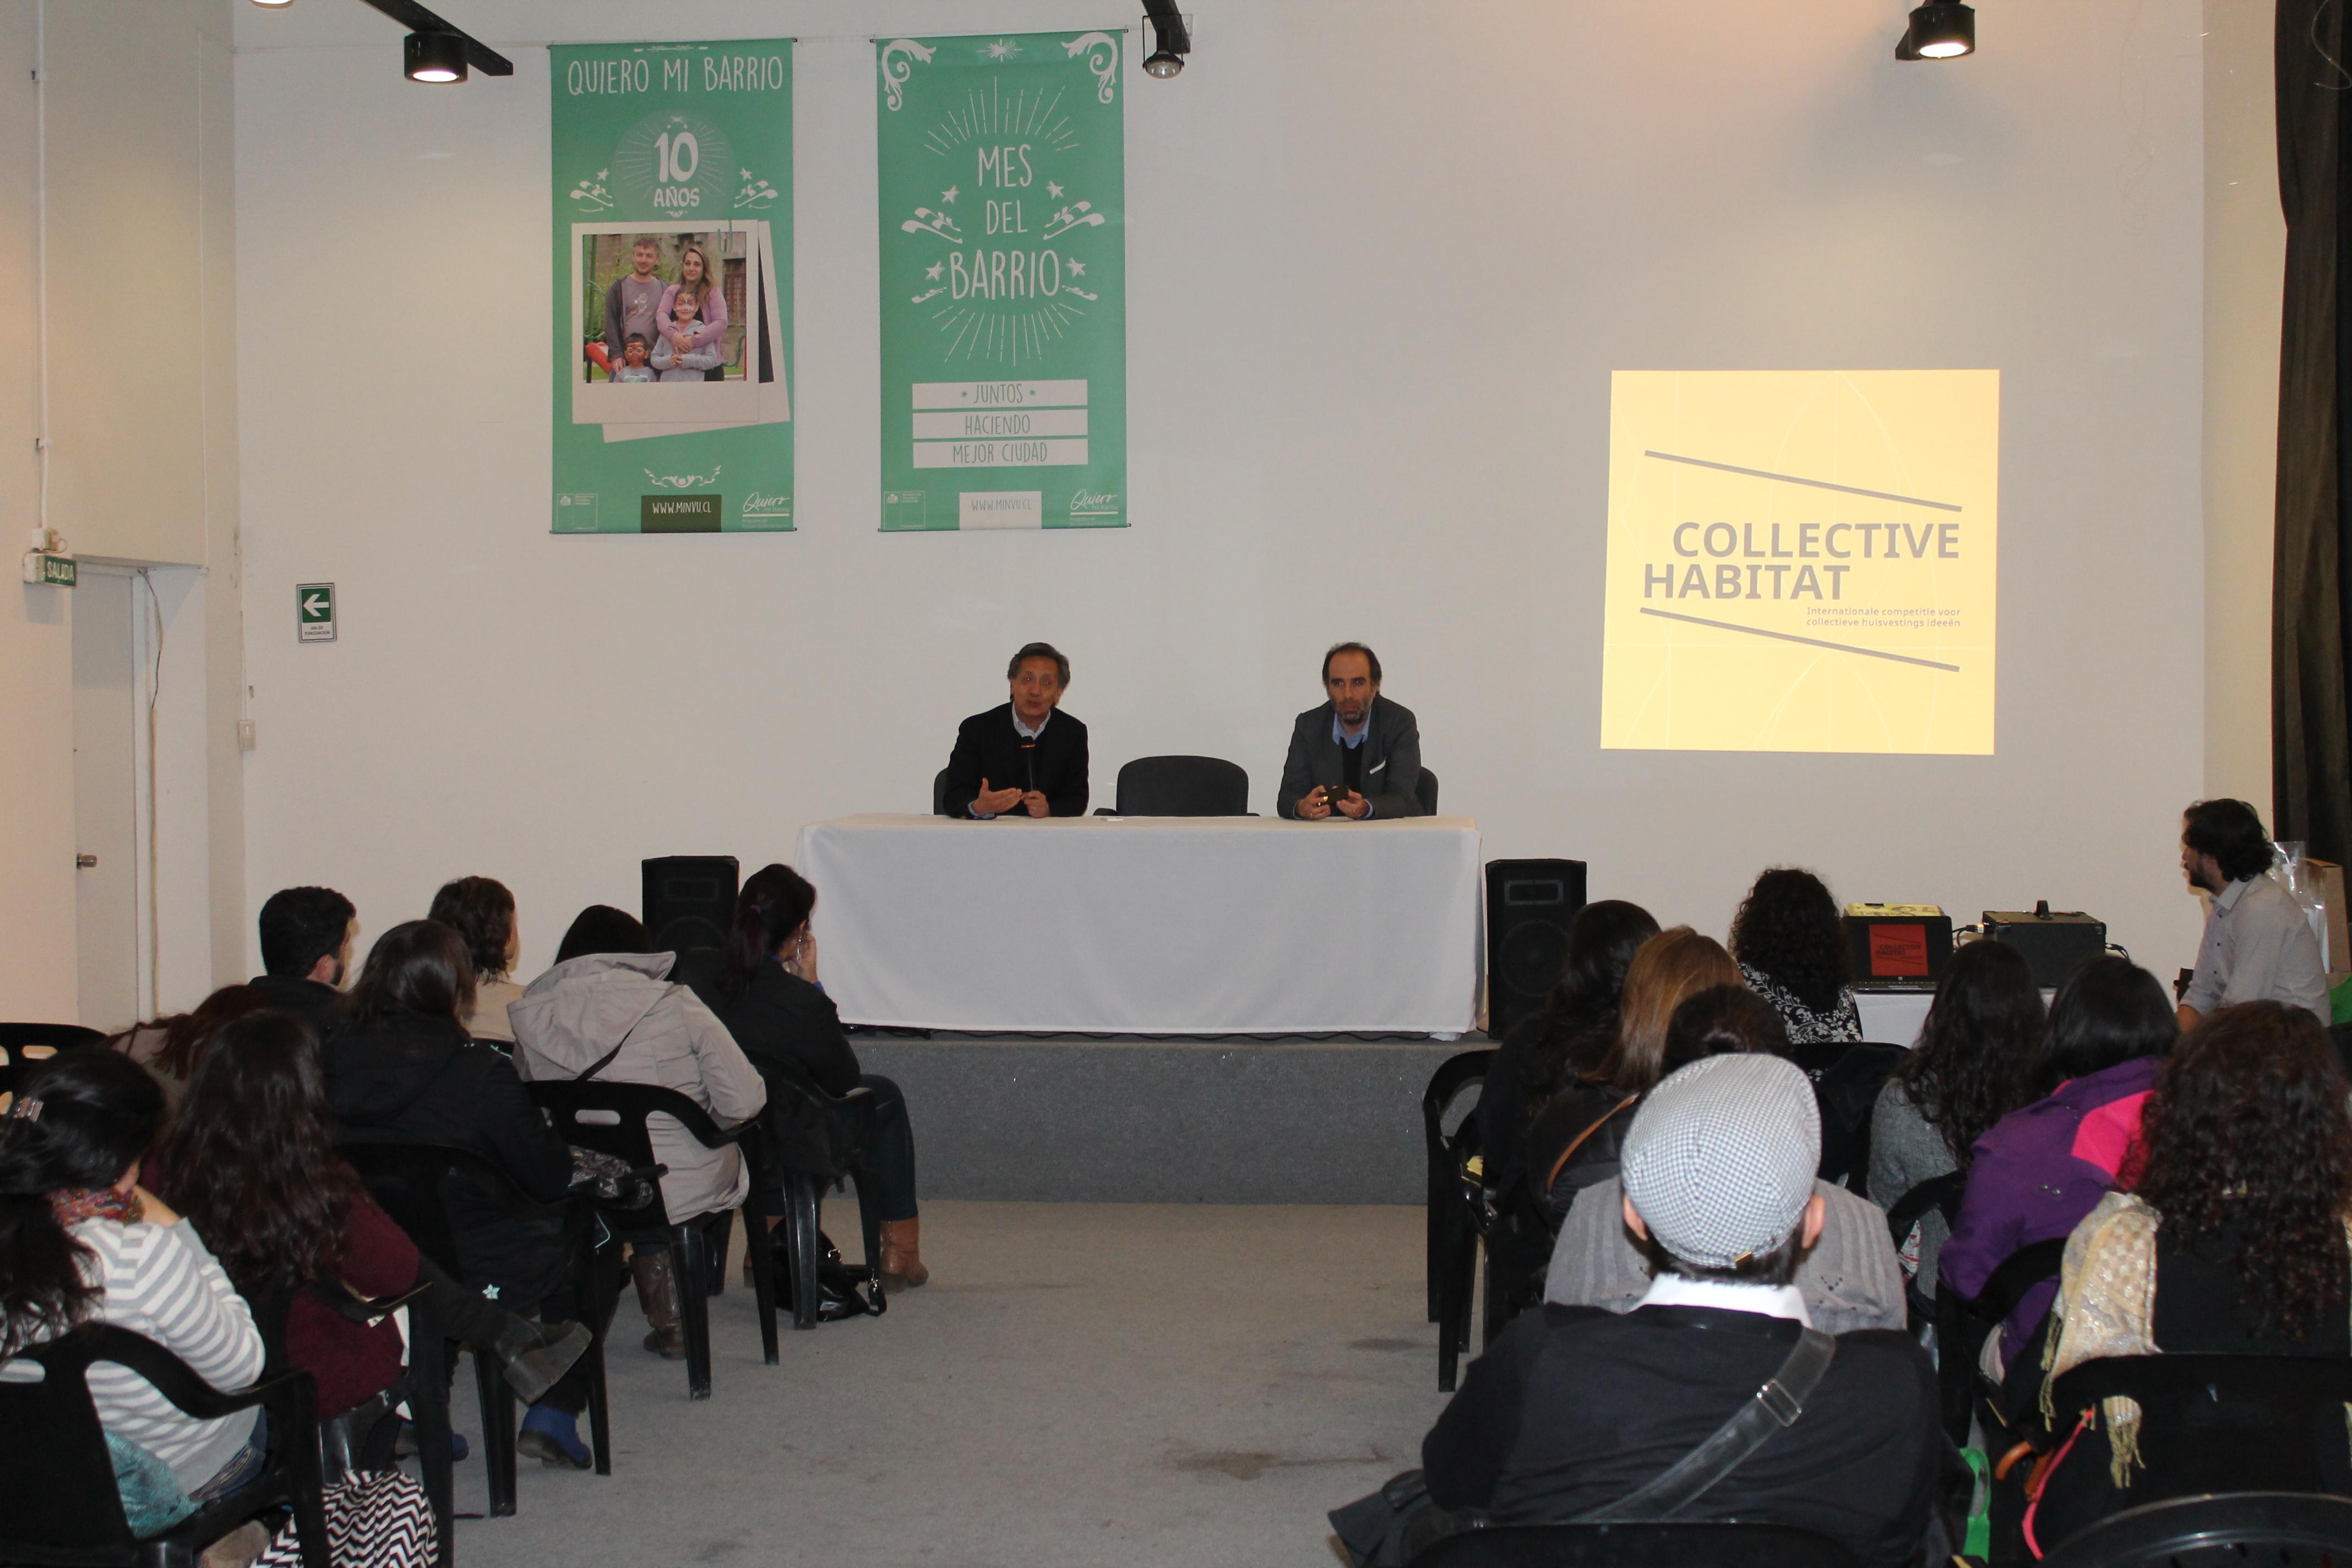 Lanzamiento del Concurso Internacional de Viviendas Colectivas "Habitat Colectivo" en abril.